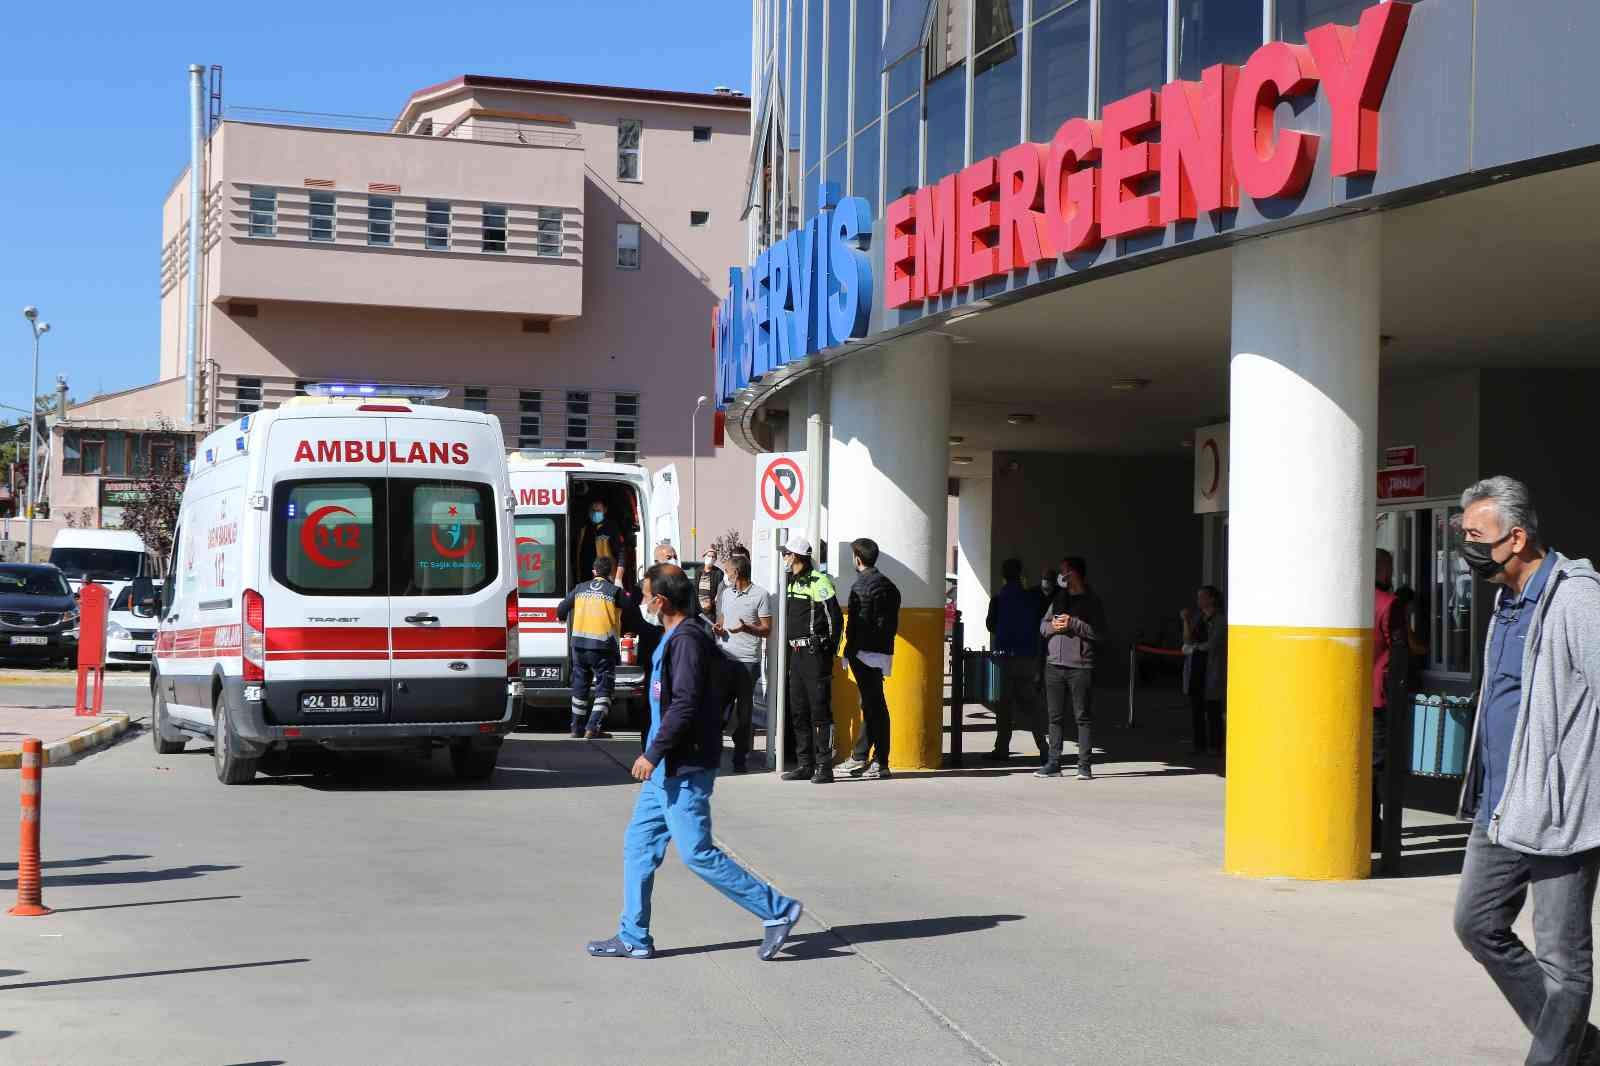 Operasyonda yaralanan asker hastanede şehit düştü #erzincan